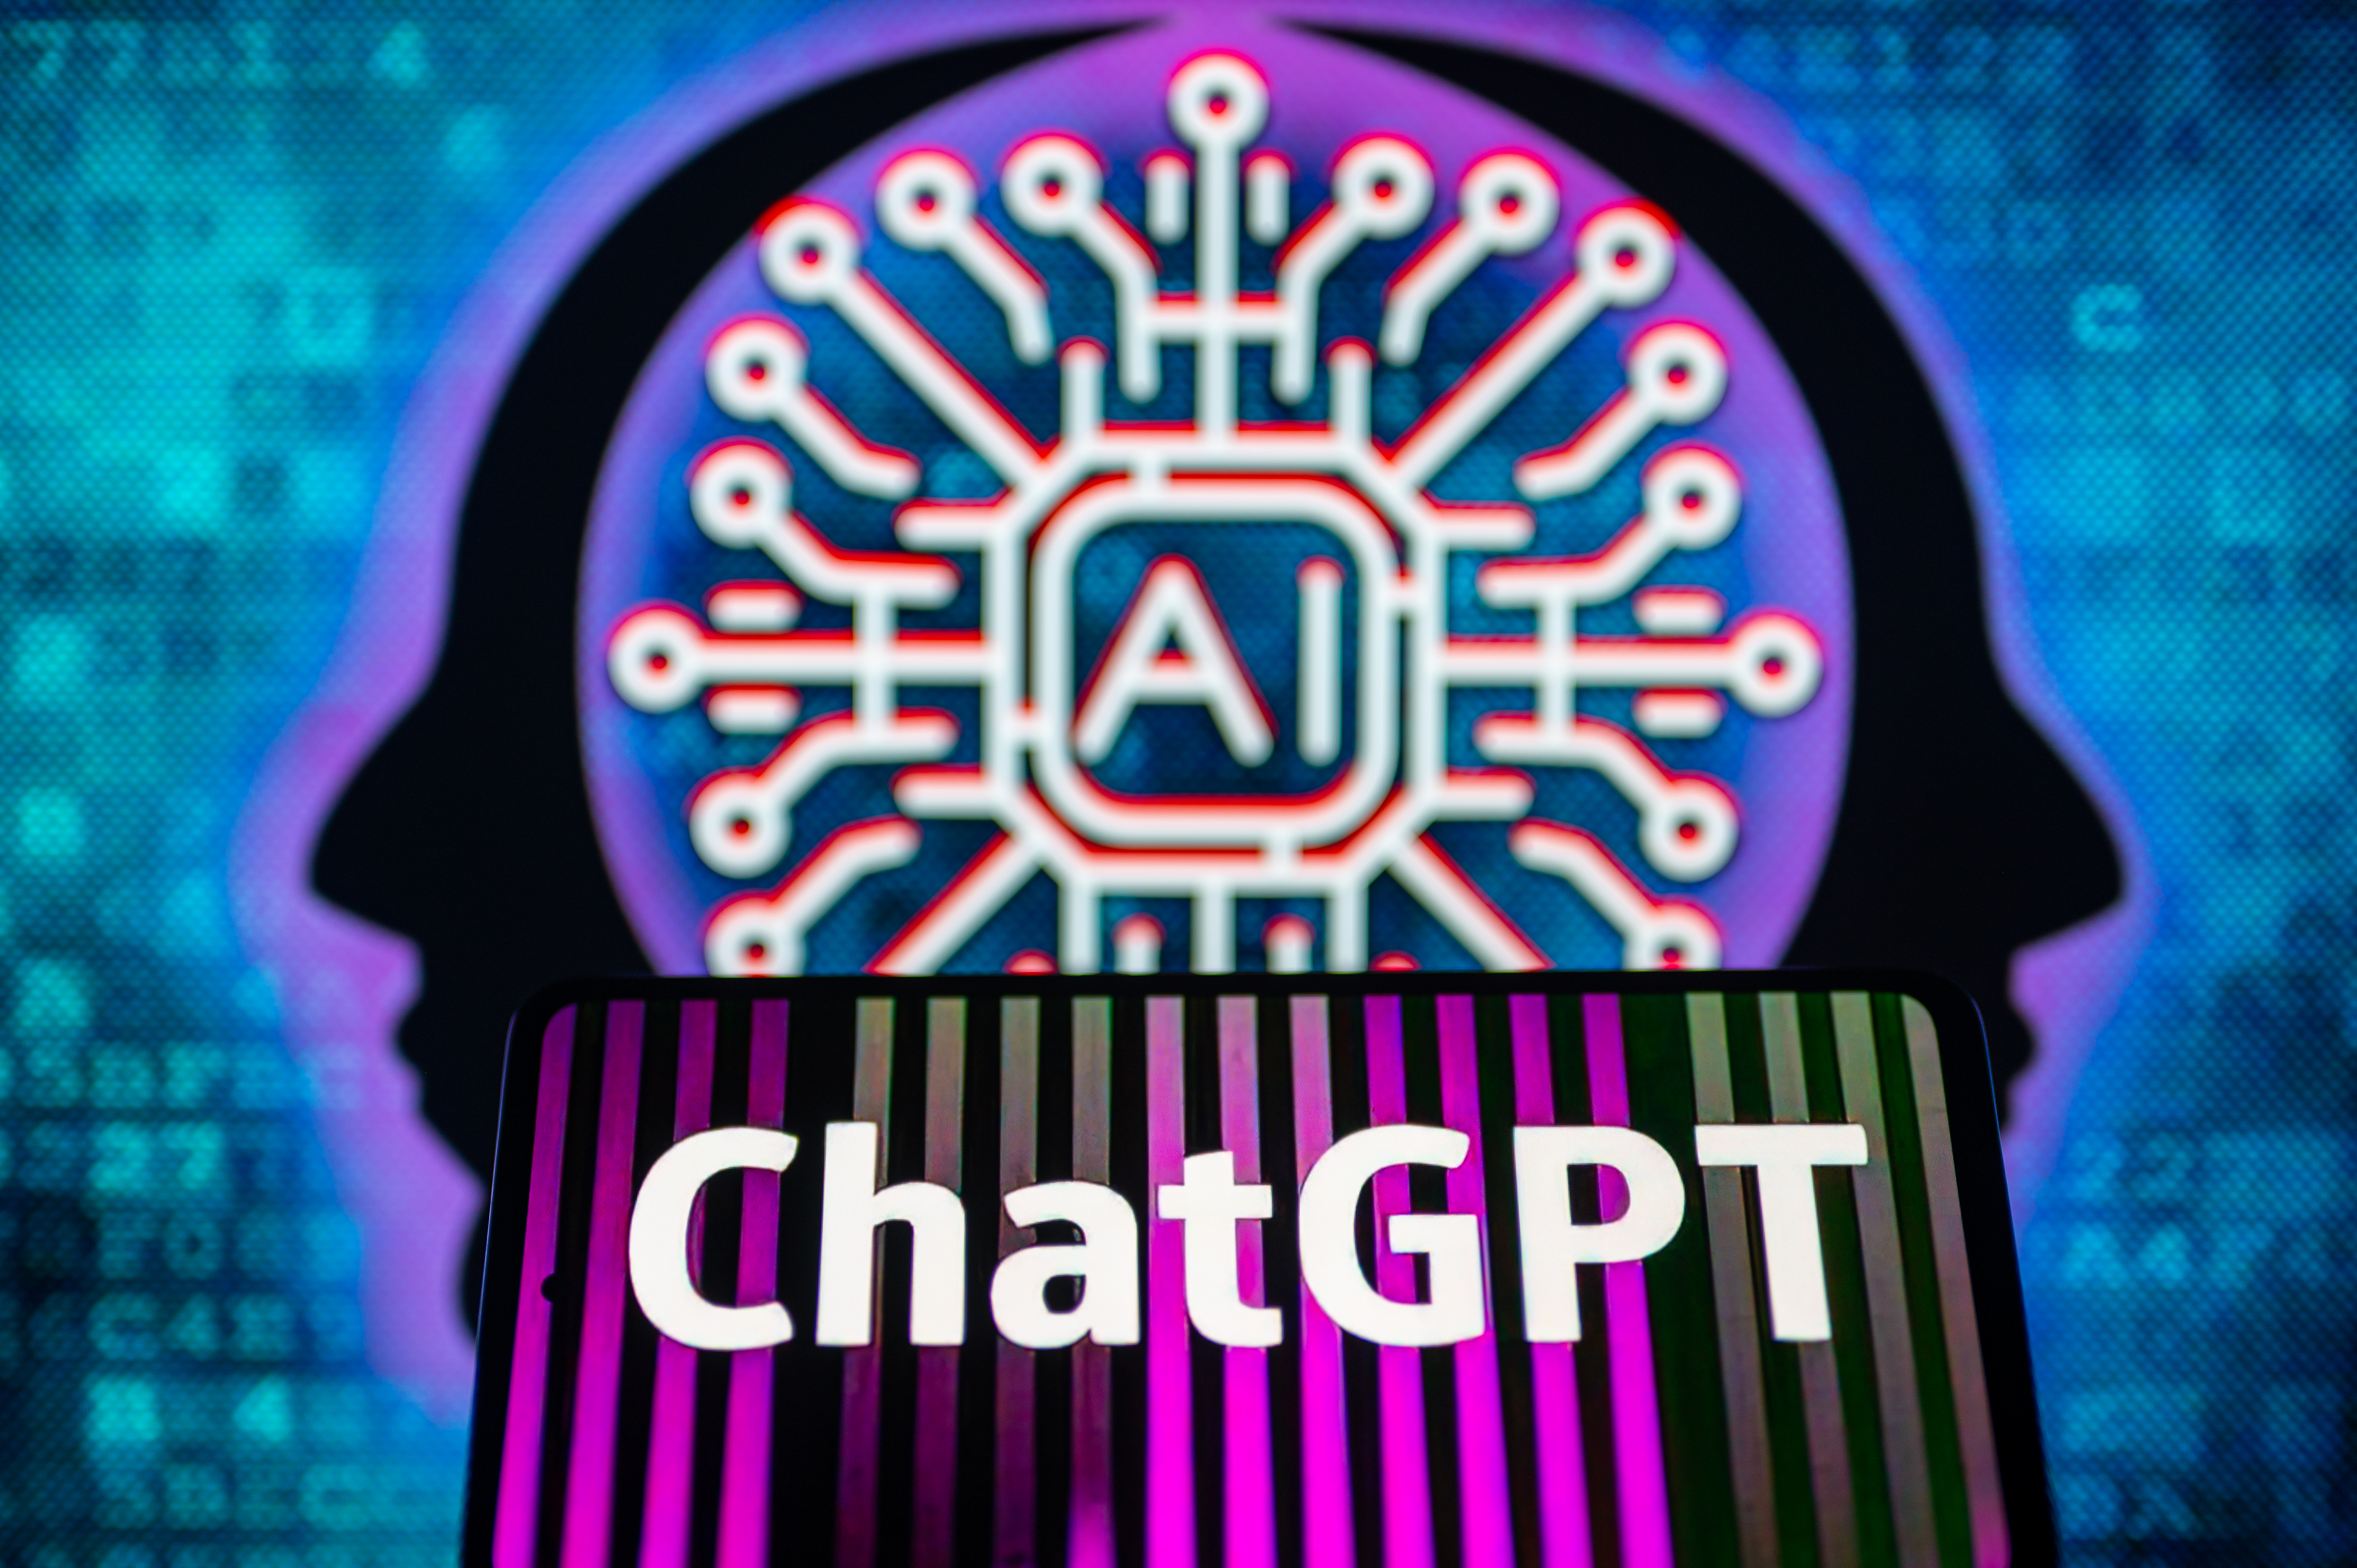 Pourquoi des hackers malveillants s'intéressent à ChatGPT